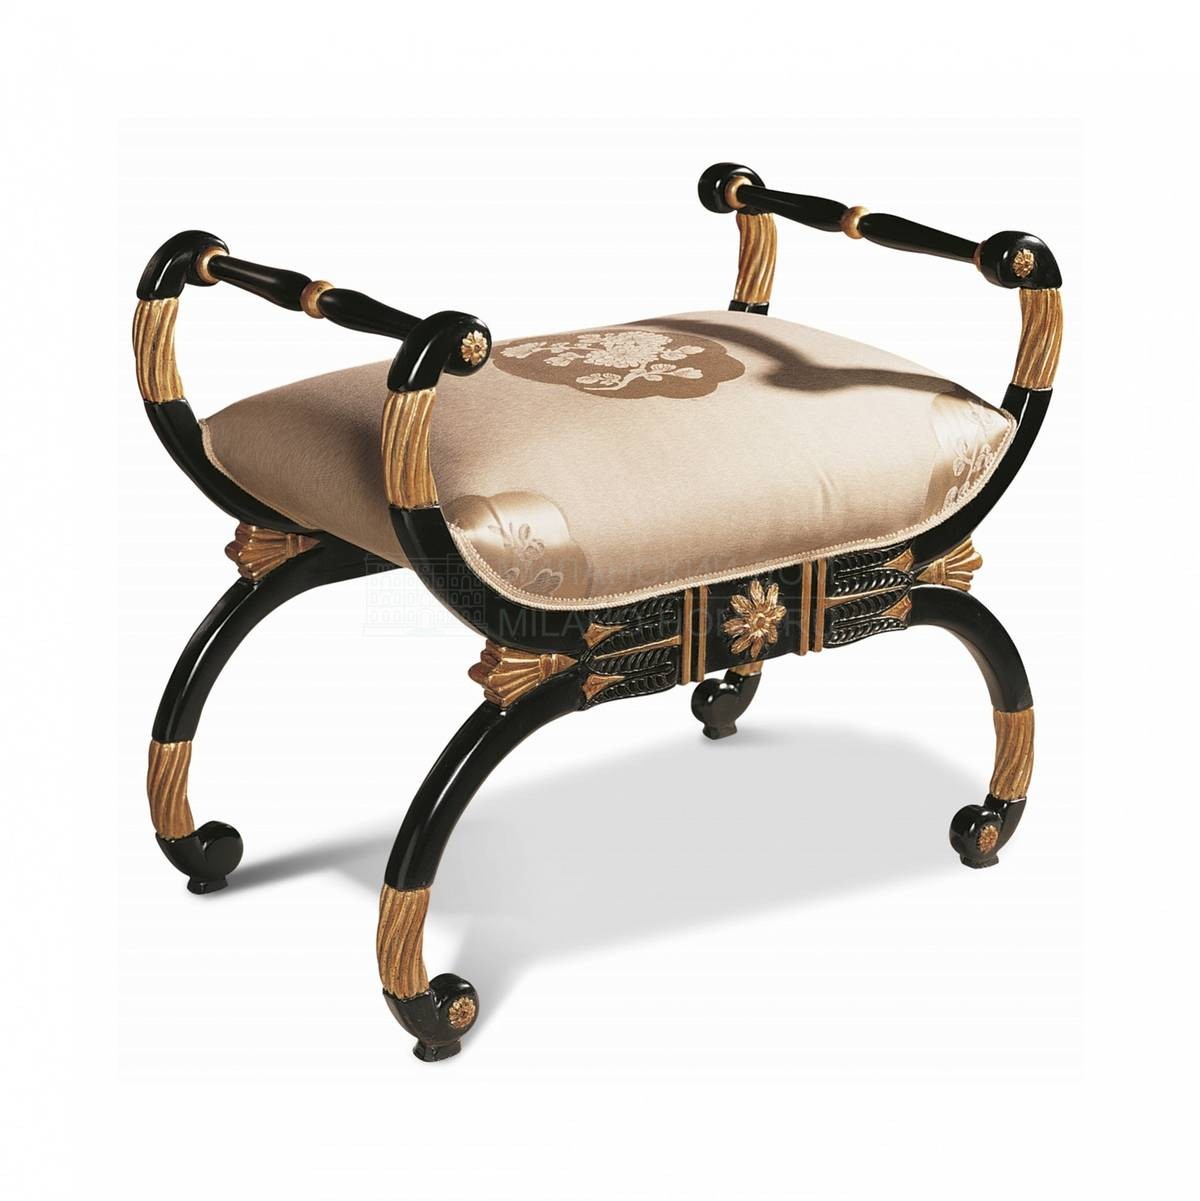 Скамейка The Upholstery / art.D297 из Италии фабрики FRANCESCO MOLON